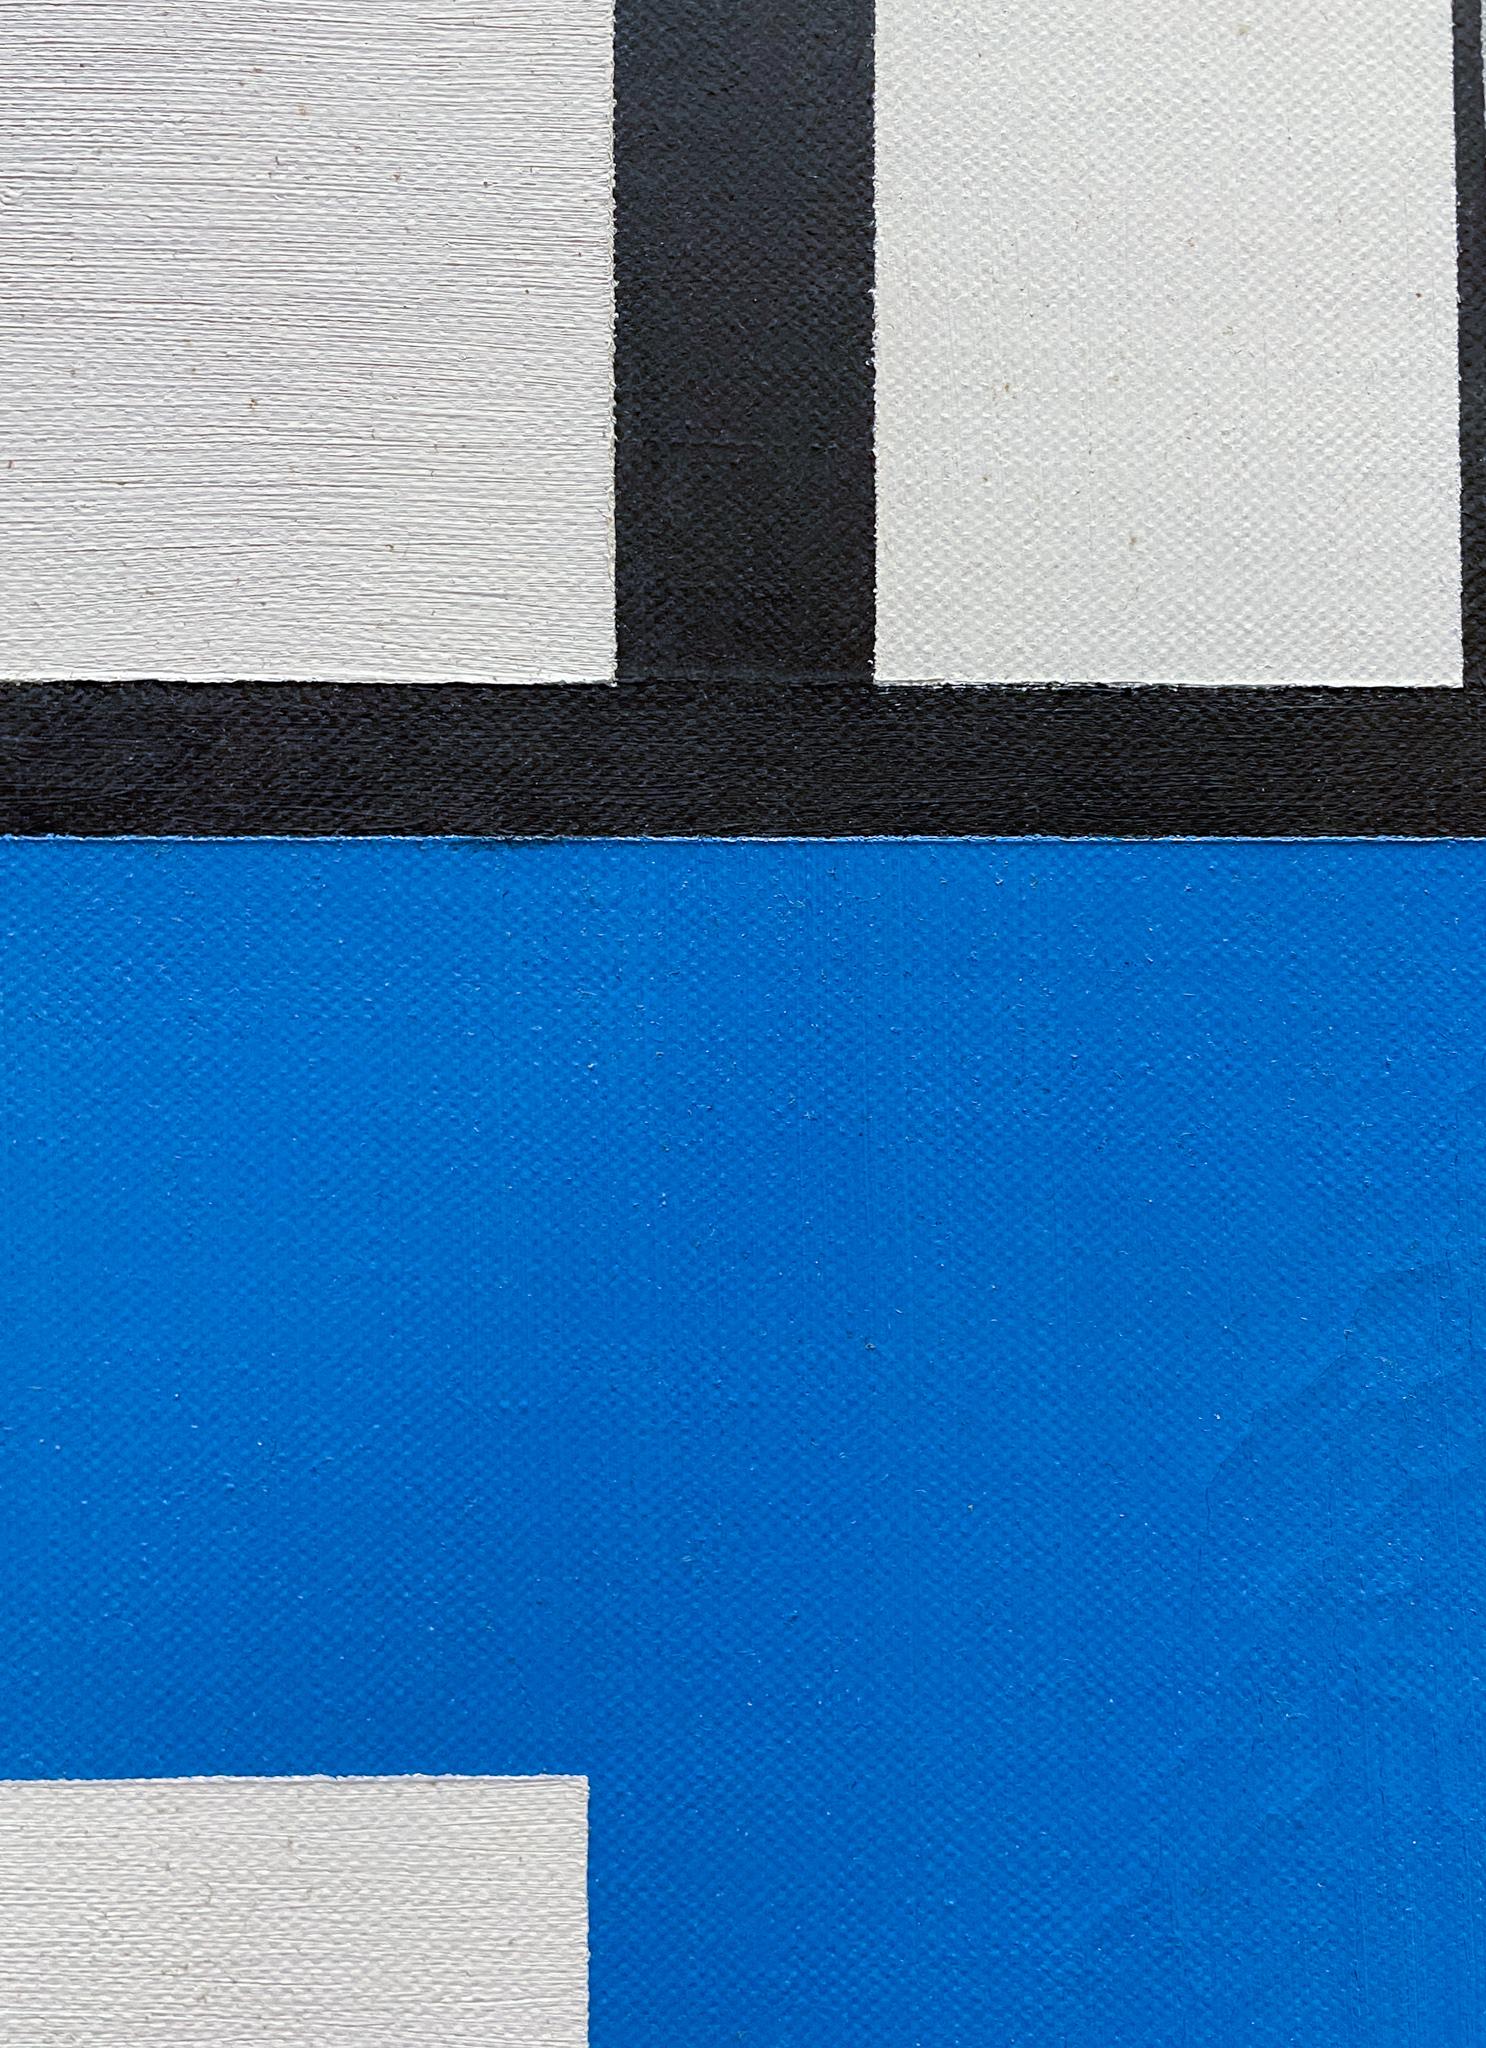 Linie, Farbe, Form Nummer 1, 1959, von Albert Manchak (geb. 1925)
Öl auf Leinwand
35 ½ x 35 ½ Zoll ungerahmt
37 x 37 Zoll gerahmt
Signiert unten rechts
Auf der Rückseite beschriftet (ALBERT MANCHAK Line, Color, Form Number 1 Geometric Abstraction in